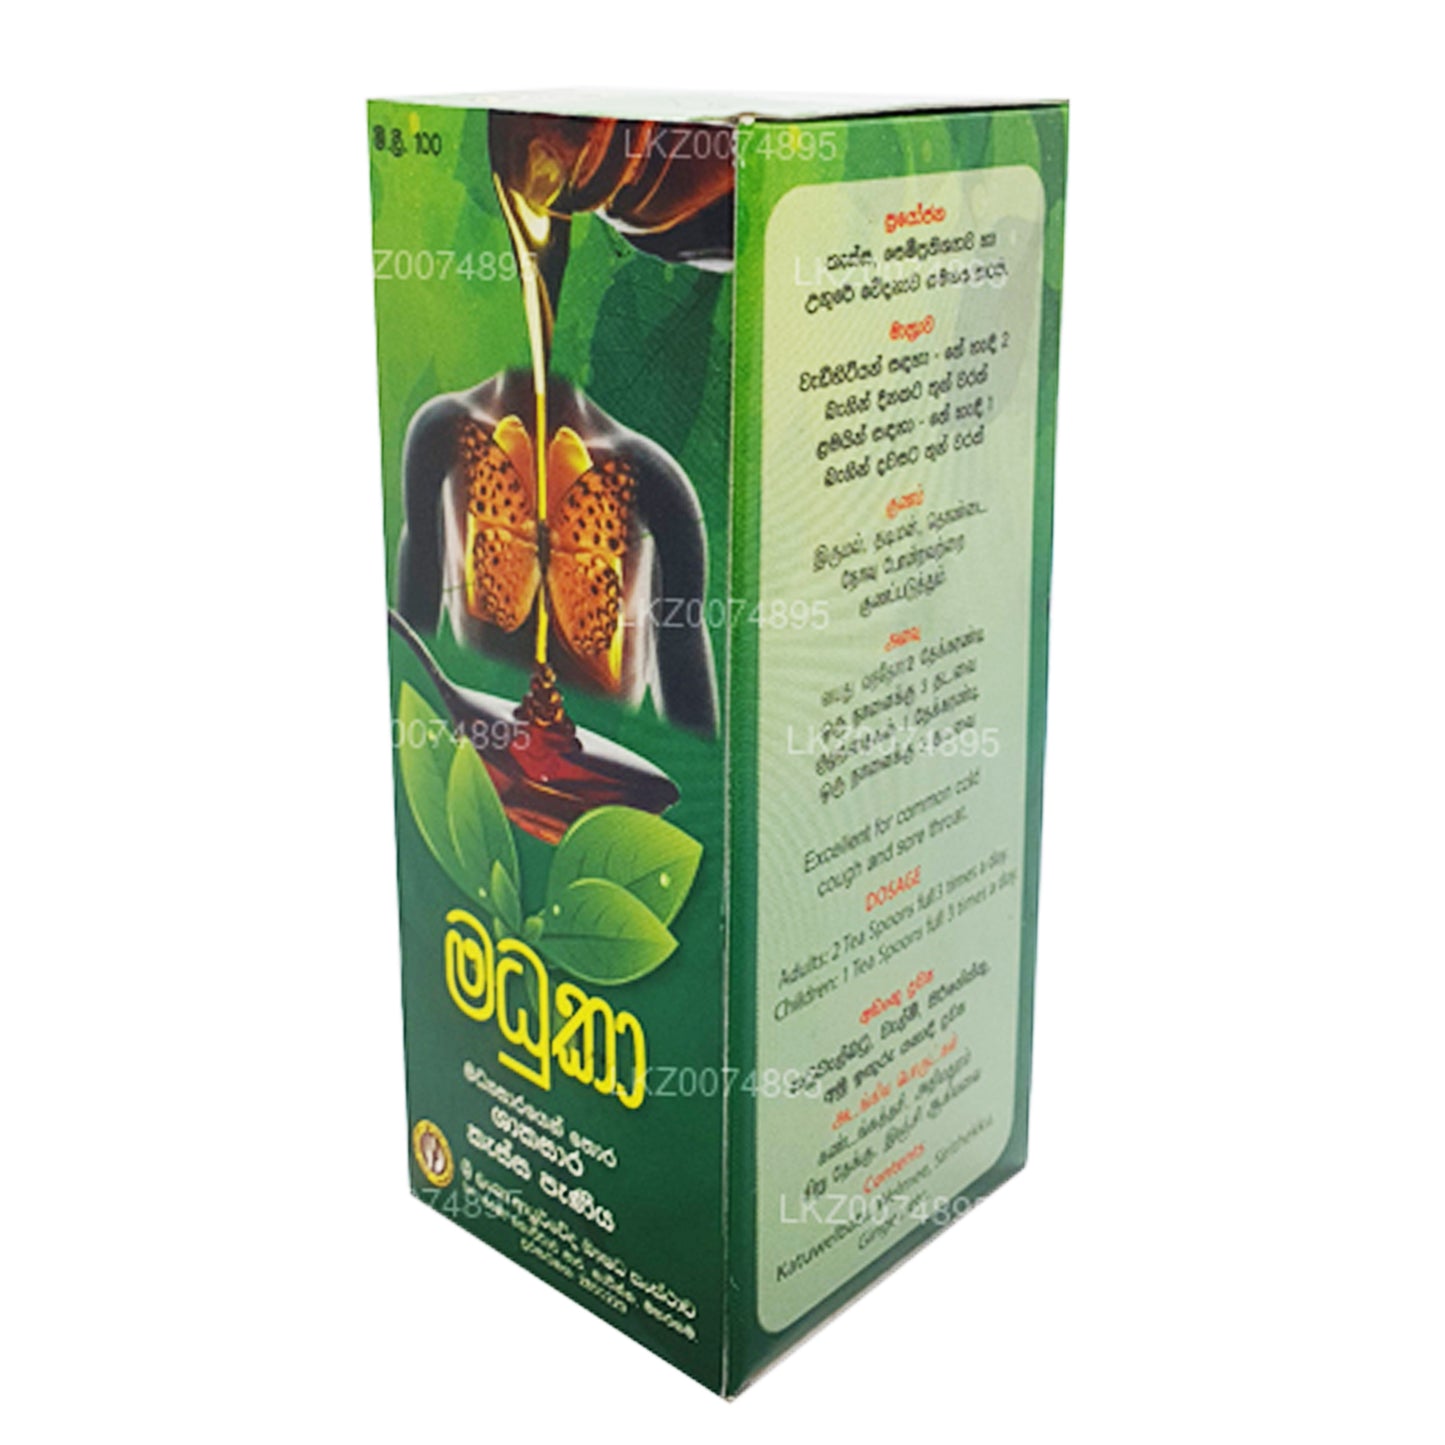 SLADC Madhuka Herbal Cough Syrup (100ml)